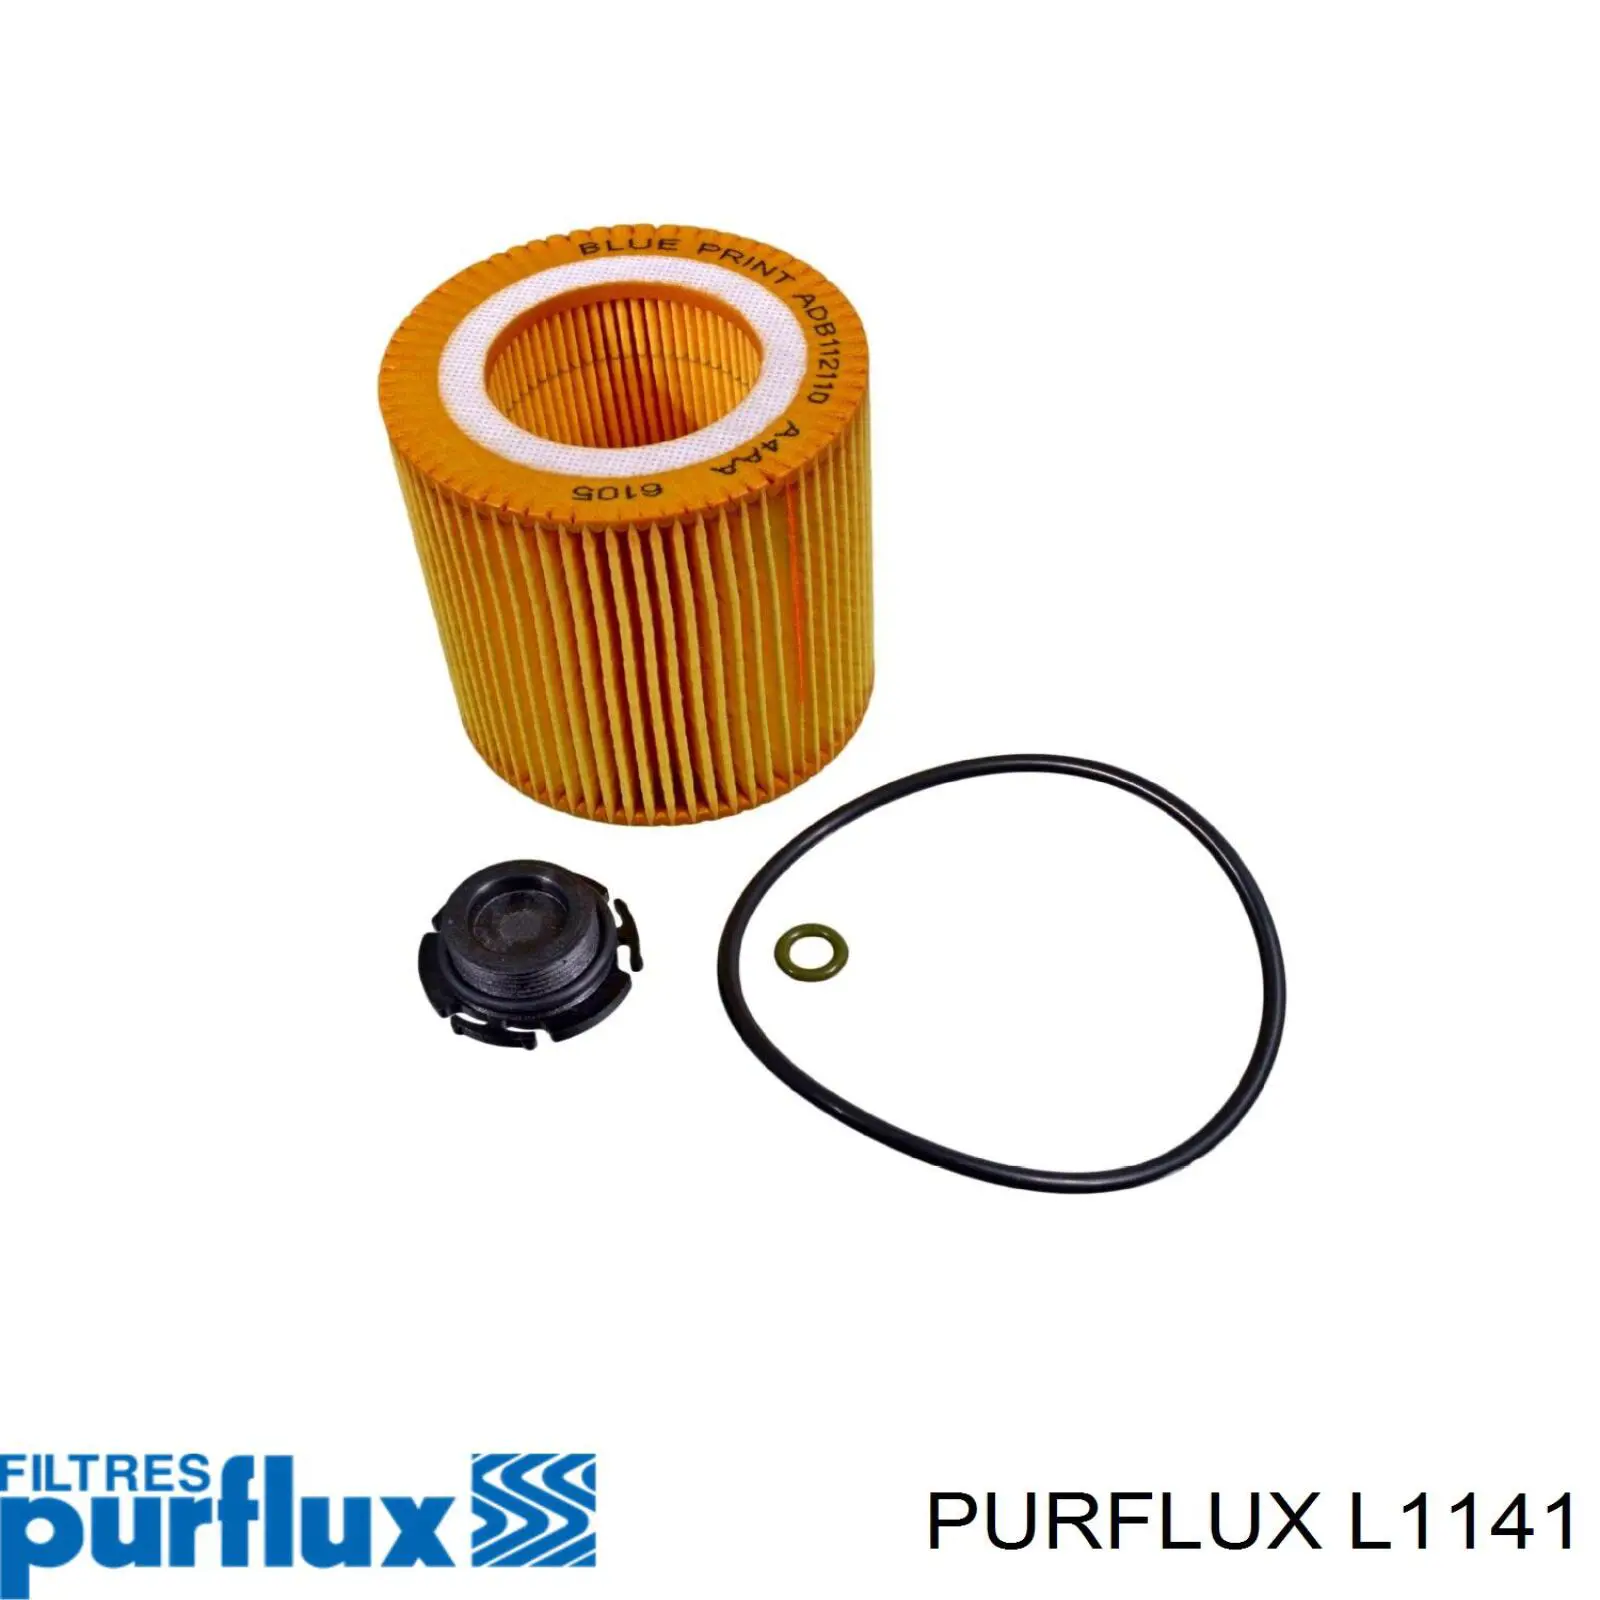 Filtro de aceite L1141 Purflux